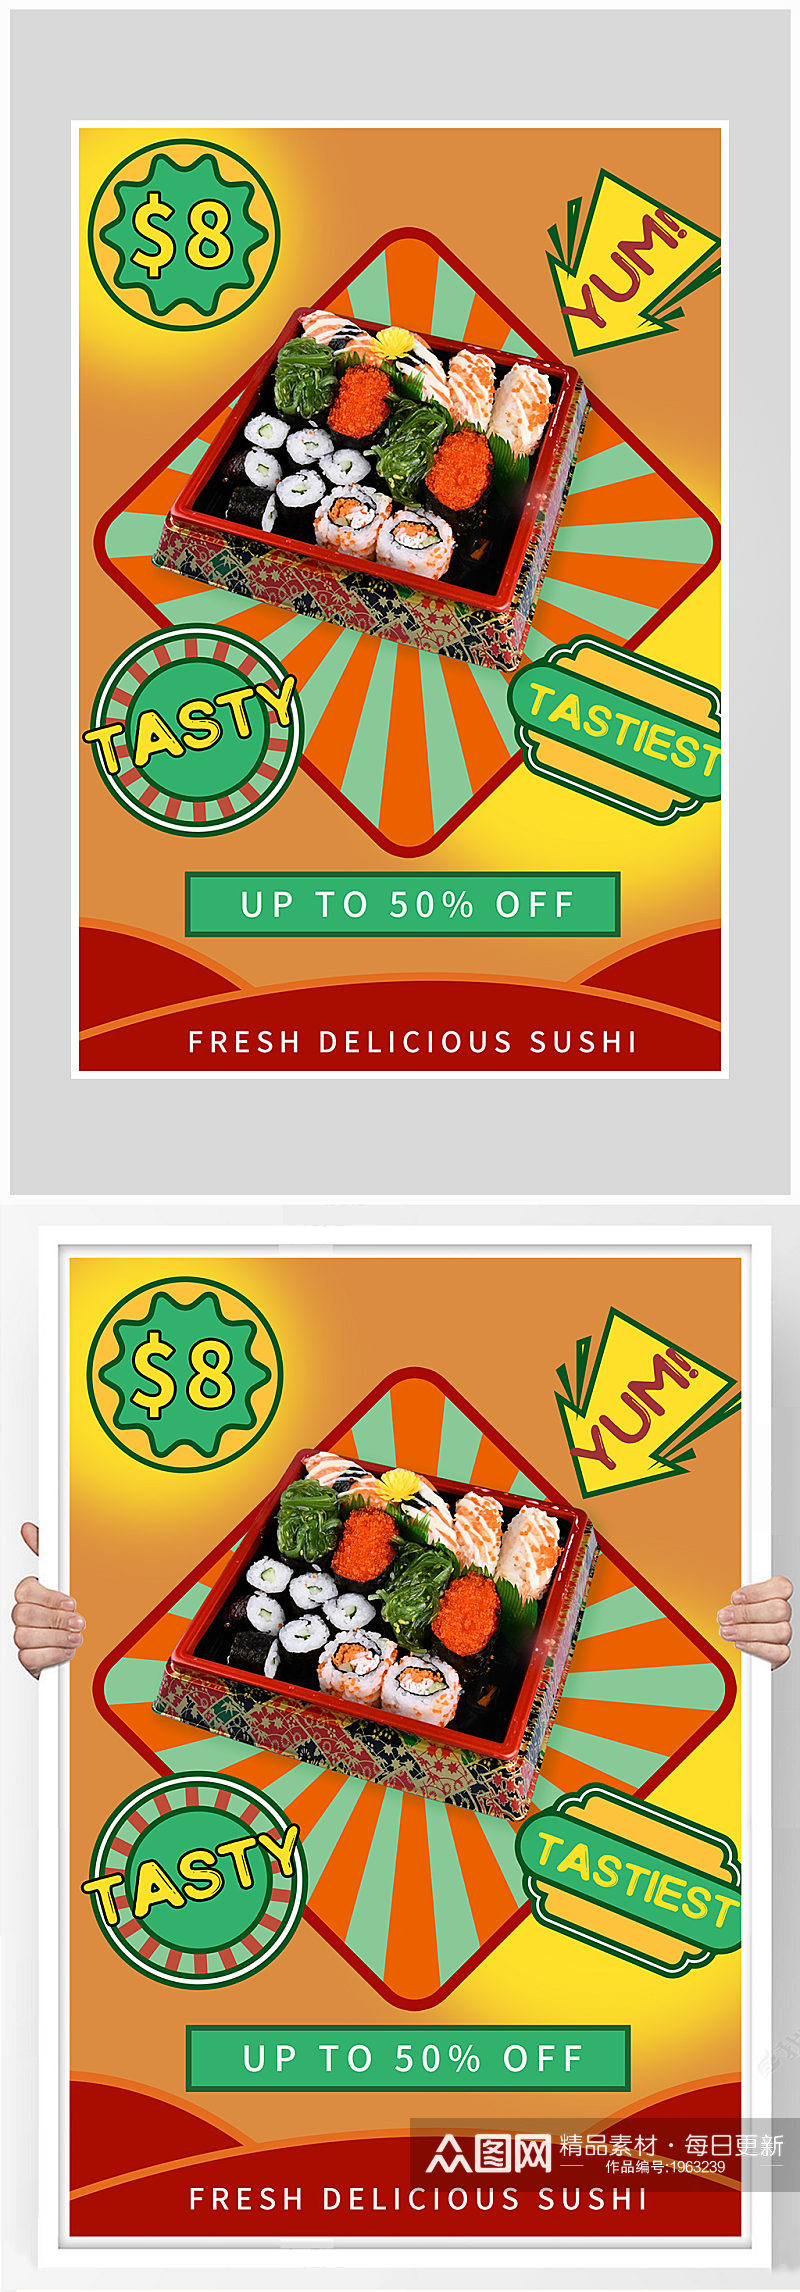 创意质感寿司料理海报设计素材